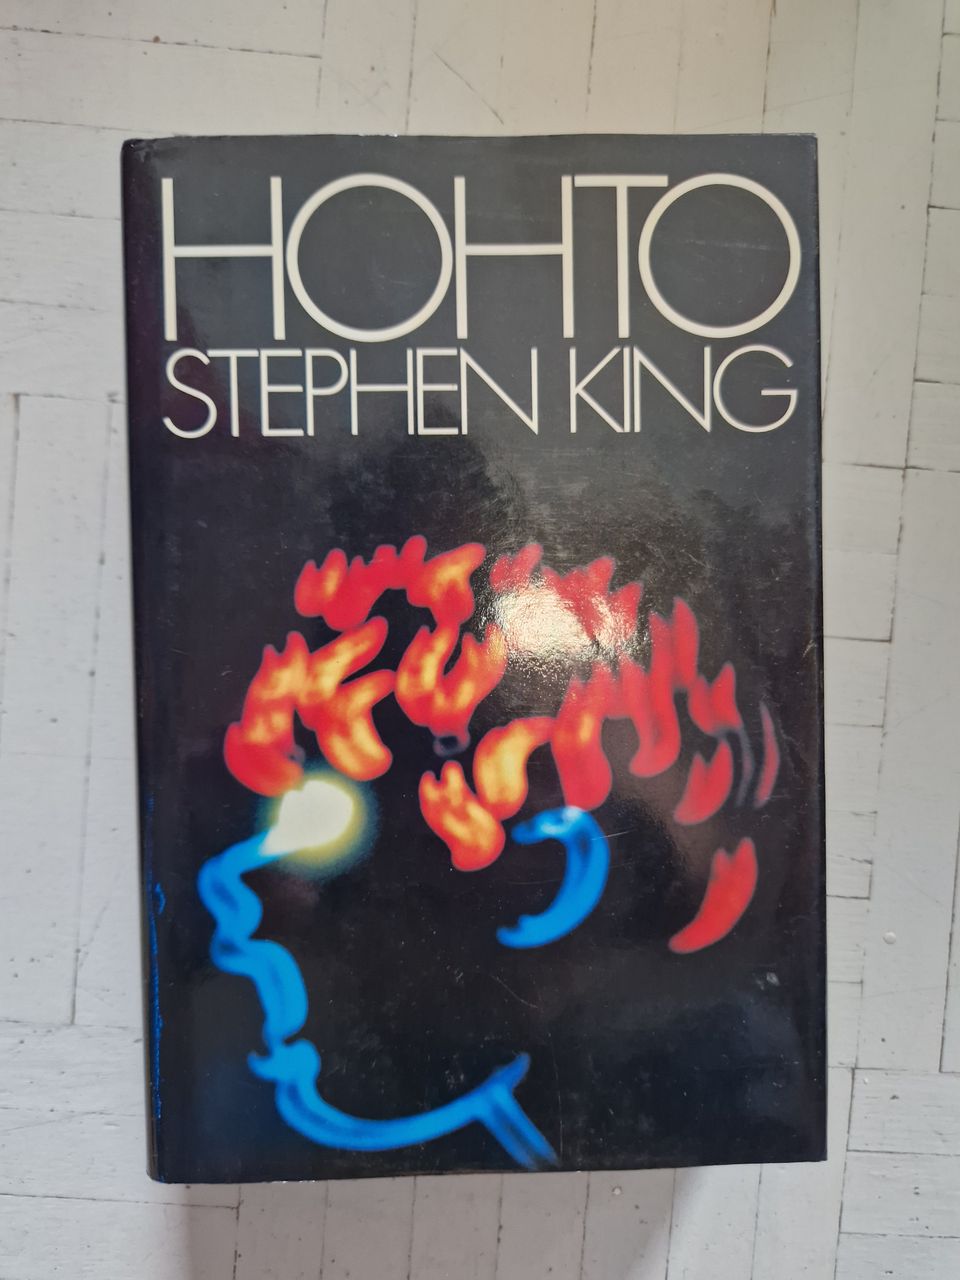 Stephen King - Hohto